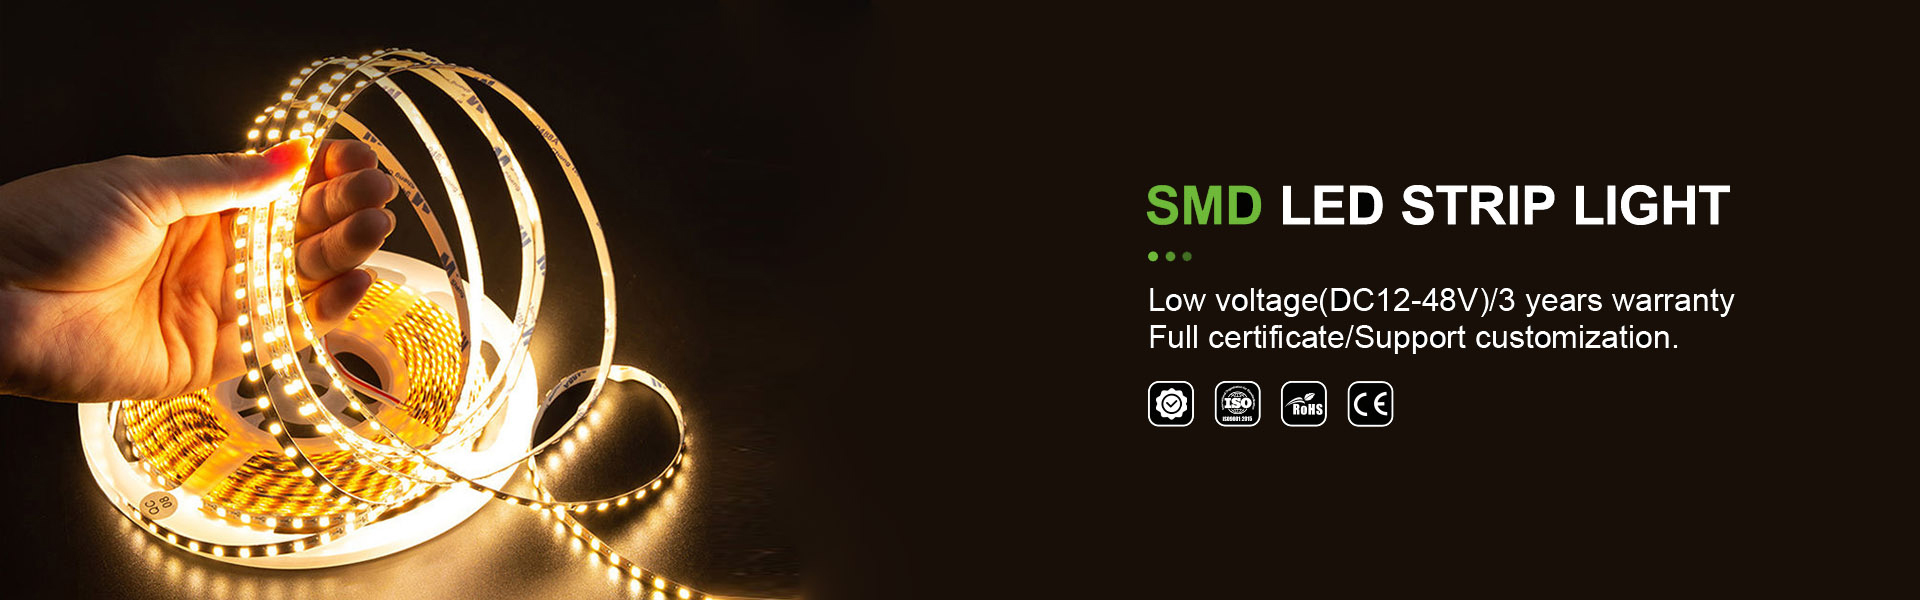 Éclairage de bande LED, voyantnéon, éclairage à bande torchale,AWS (SZ) Technology Company Limited